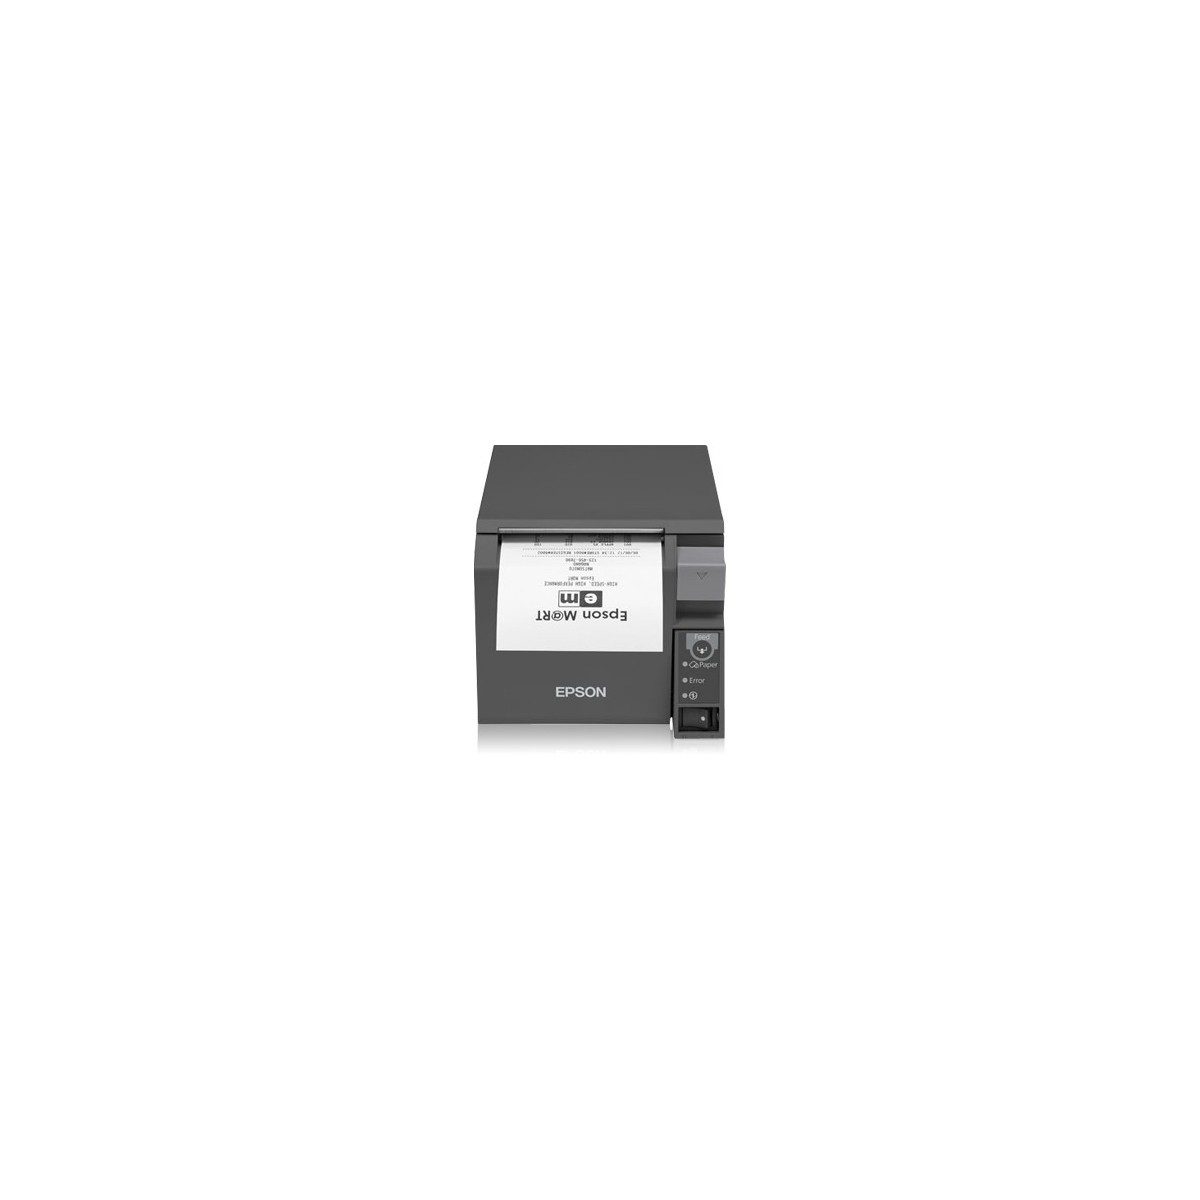 Epson TM-T70II - Thermal - POS printer - 180 x 180 DPI - 250 mm/sec - 20 cpi - 8.3 cm